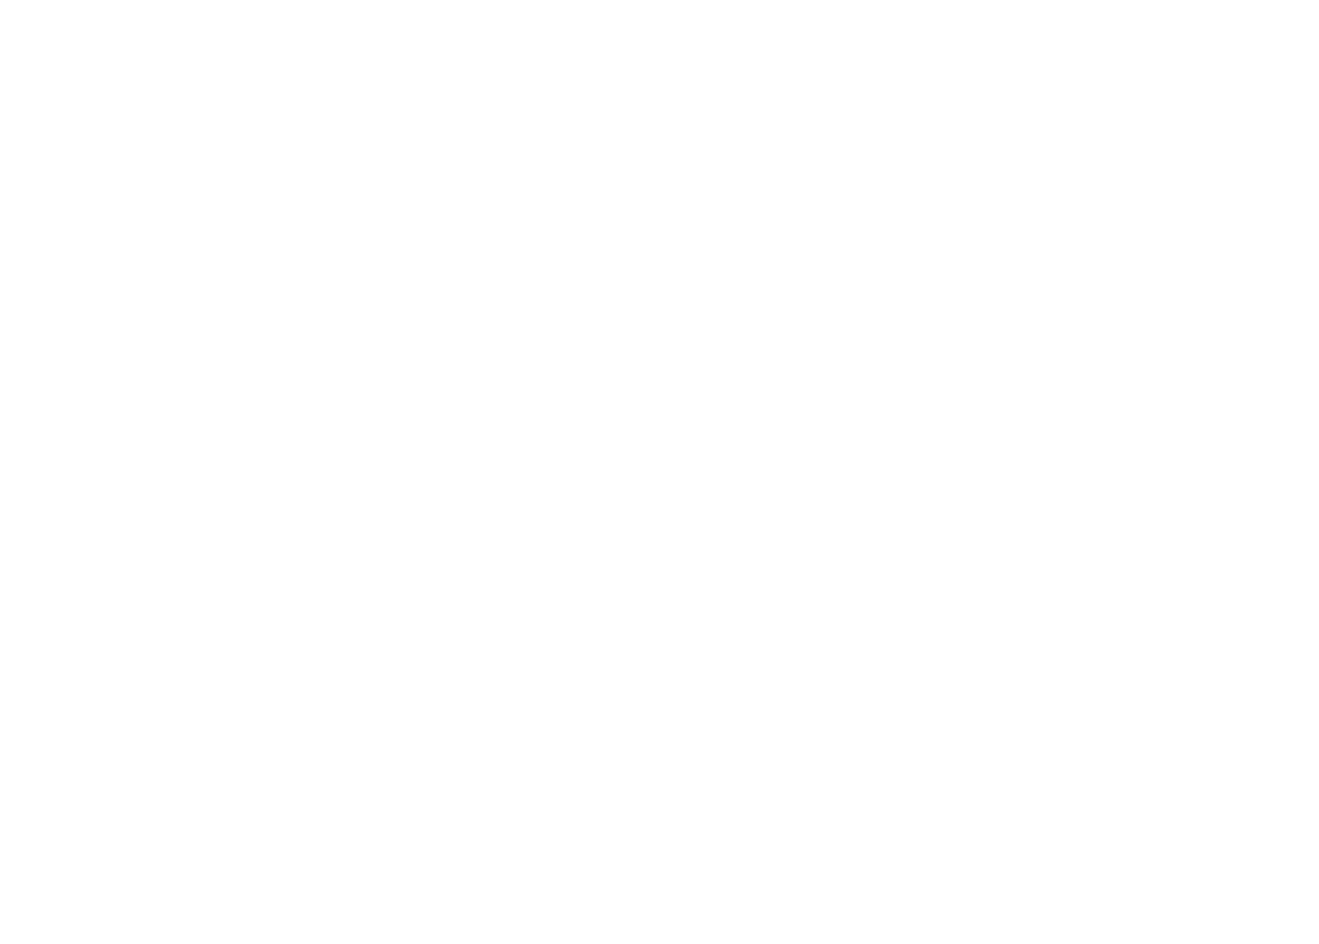 Роллер спорт, Спидскейтинг, Спринт 100мм, спортсмен сборной Московской области по спидскейтингу Александр Маринка слева